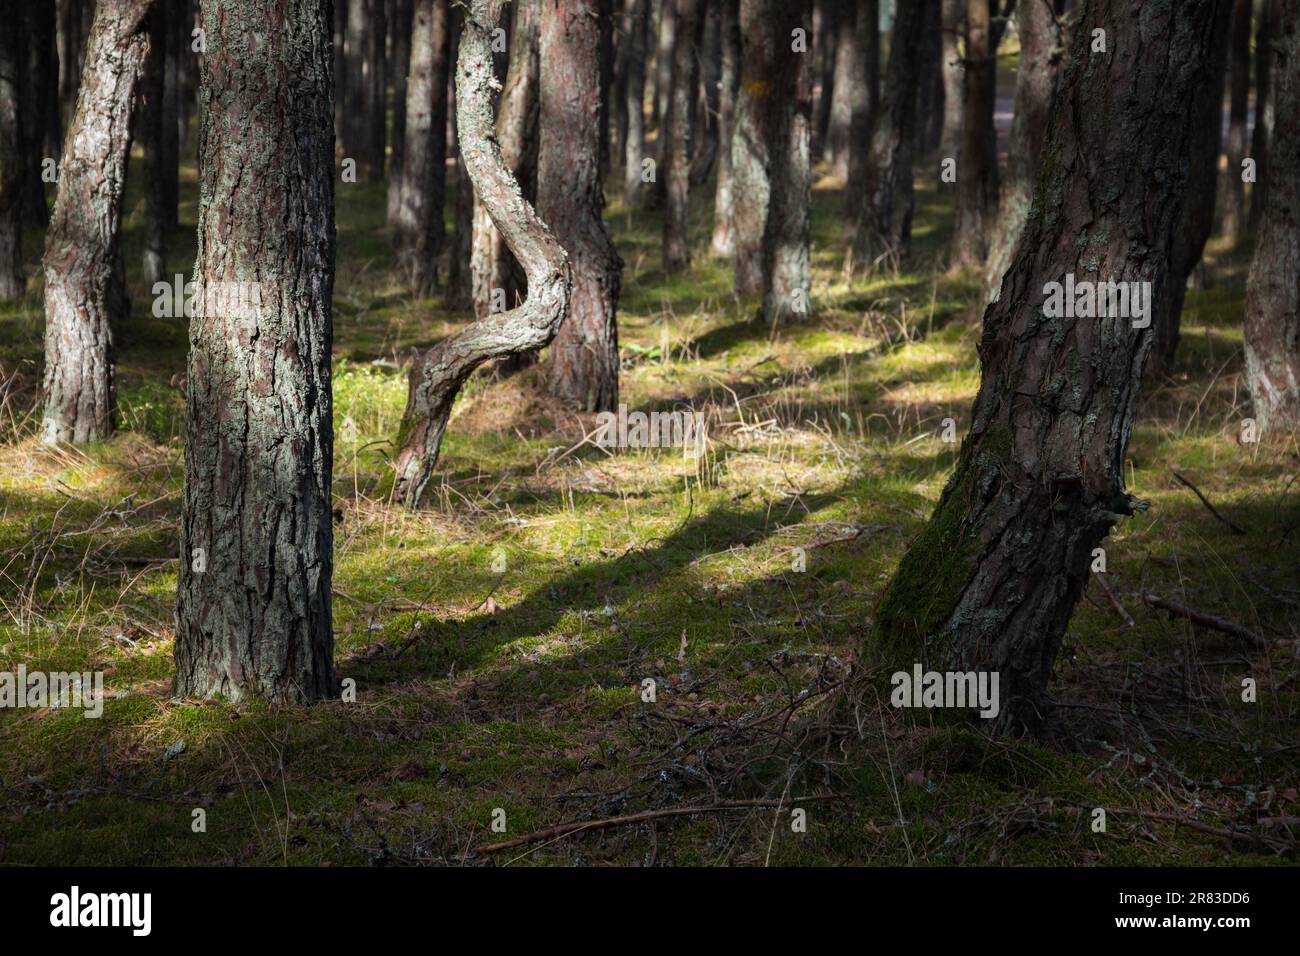 Landschaftsfoto des tanzenden Waldes an einem sonnigen Tag. Kiefernwald an der Kurischen Nehrung in der Oblast Kaliningrad, Russland bekannt für seinen ungewöhnlich verdrehten T Stockfoto